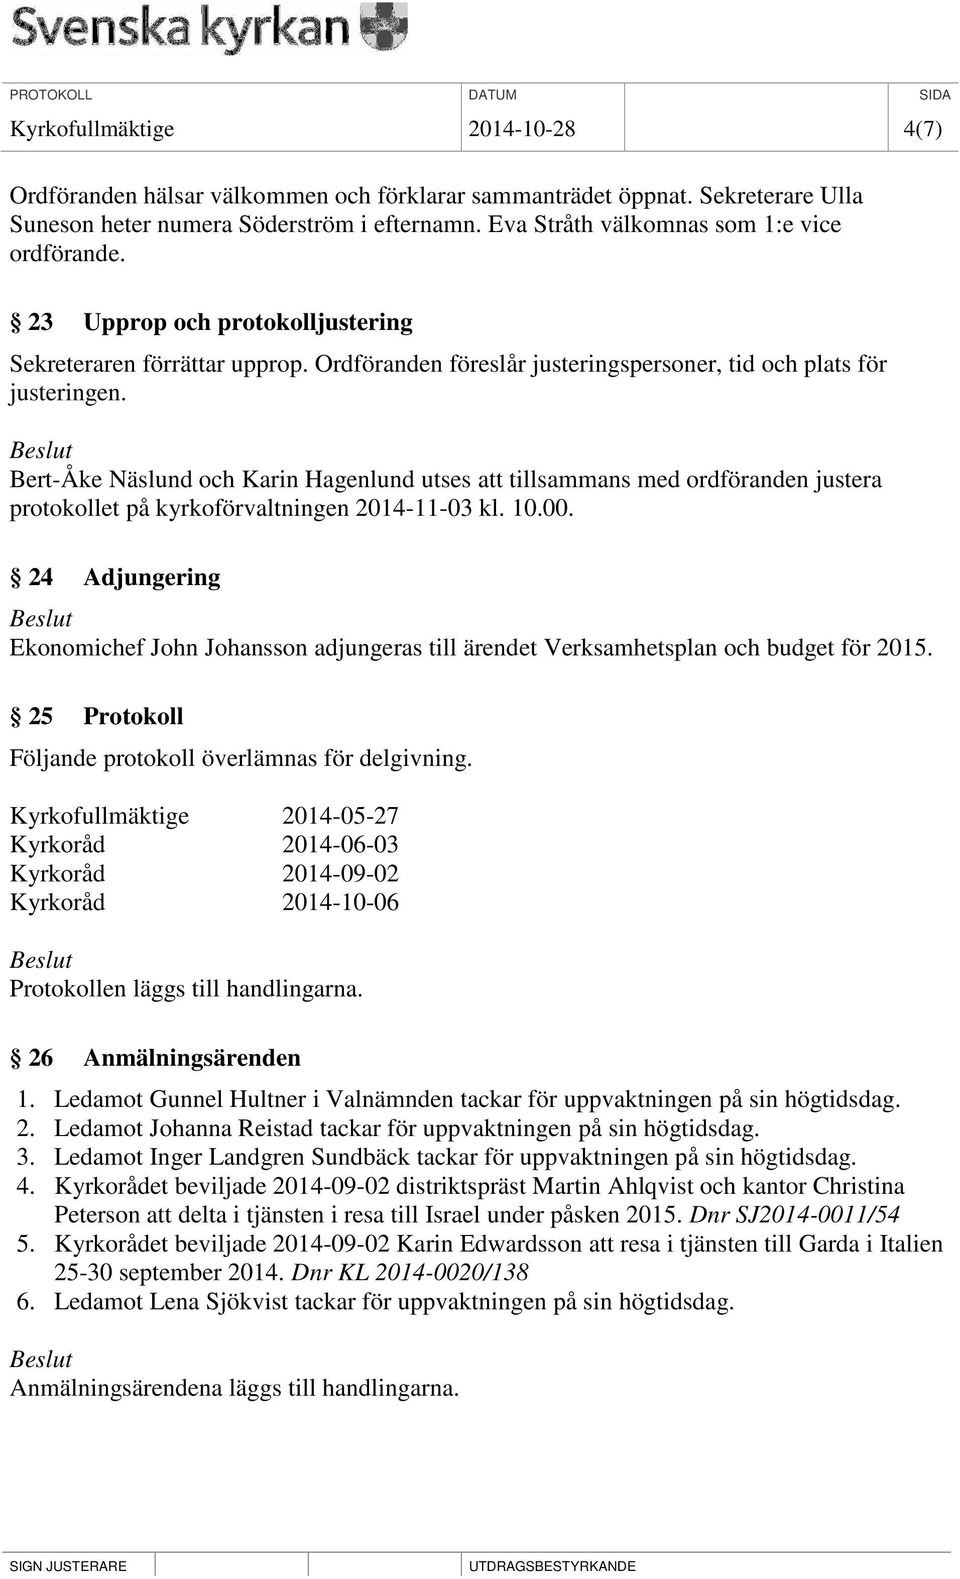 Bert-Åke Näslund och Karin Hagenlund utses att tillsammans med ordföranden justera protokollet på kyrkoförvaltningen 2014-11-03 kl. 10.00.